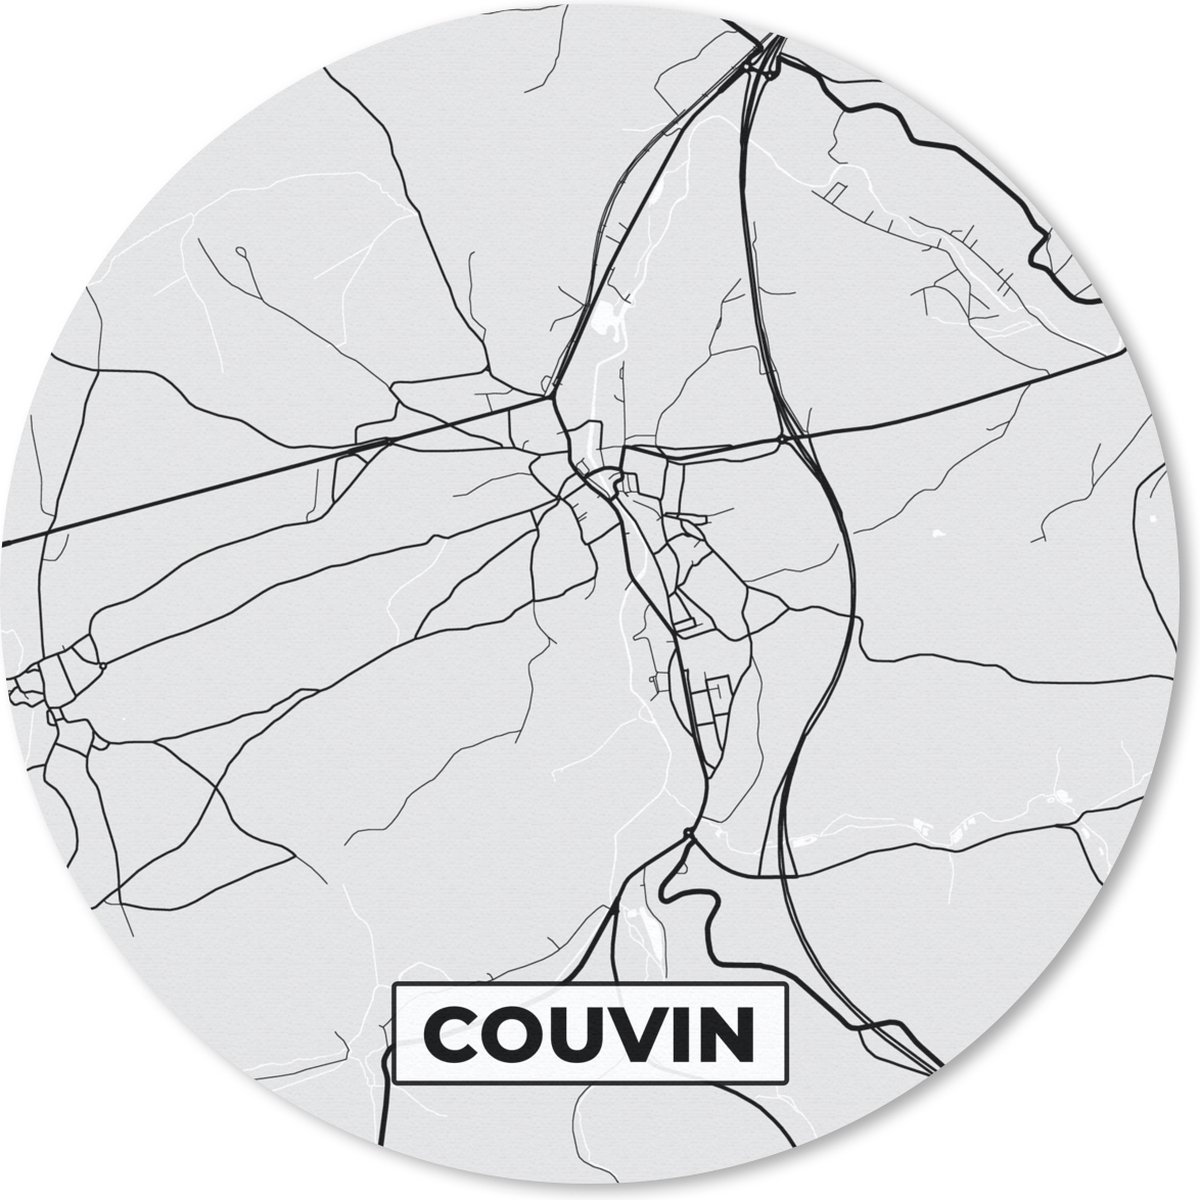 Muismat - Mousepad - Rond - Stadskaart – Plattegrond – België – Zwart Wit – Couvin – Kaart - 50x50 cm - Ronde muismat